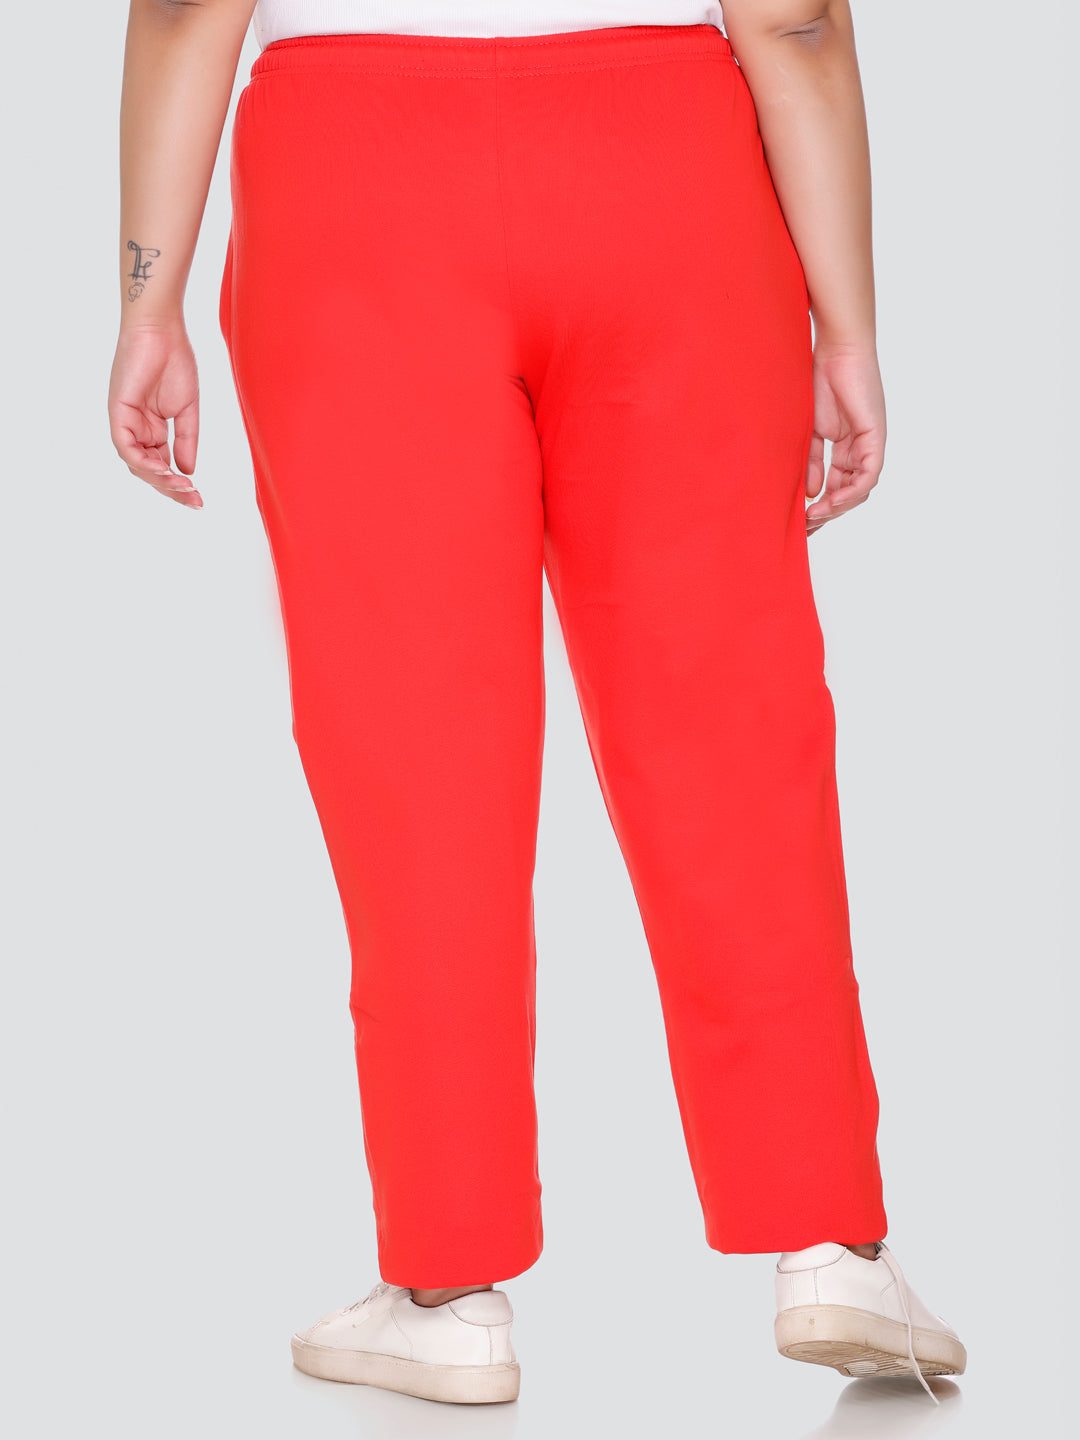 Buy Winter Cotton Wear Fleece Red Track pants/Lowers for Women